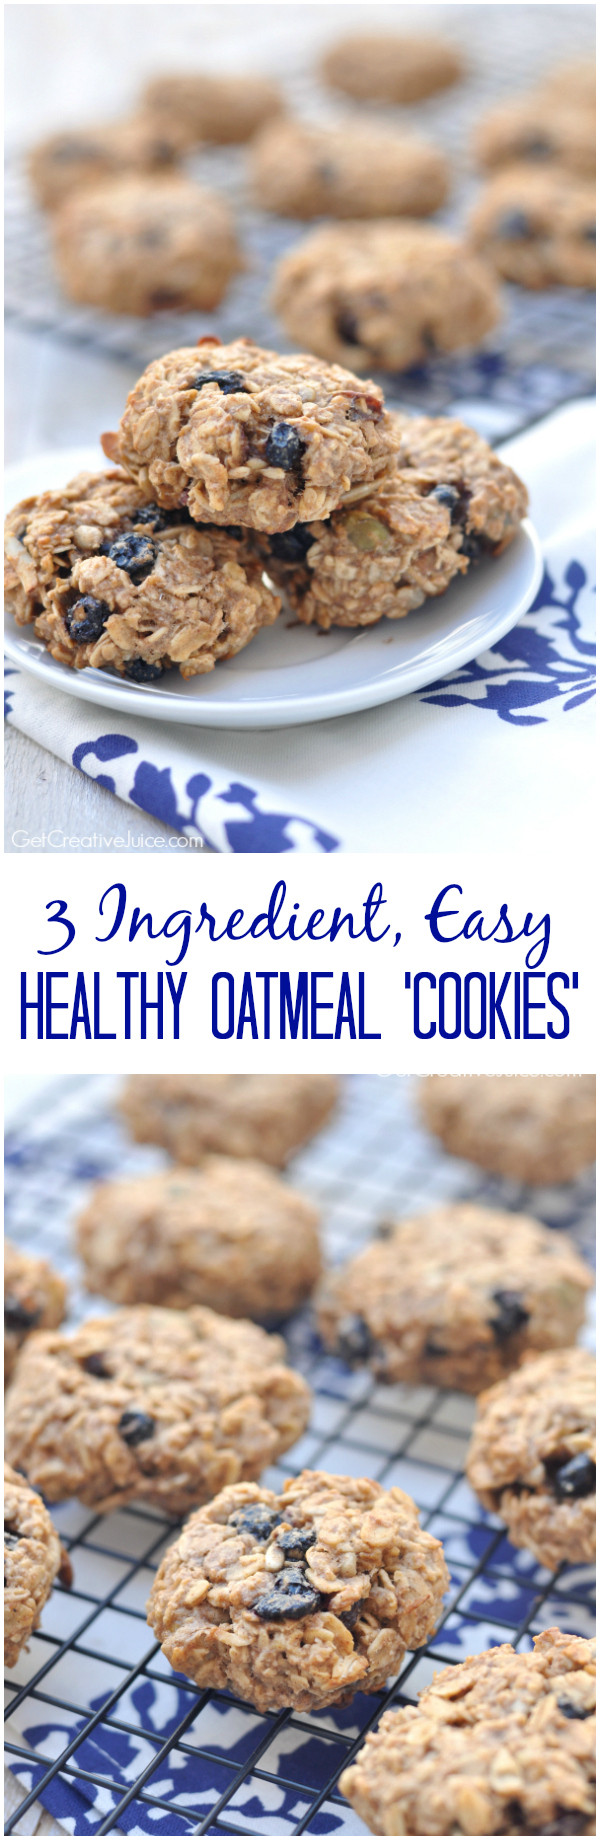 Easy Healthy Oatmeal Cookies Best 20 Easy 3 Ingre Nt Healthy Oatmeal Cookies Creative Juice